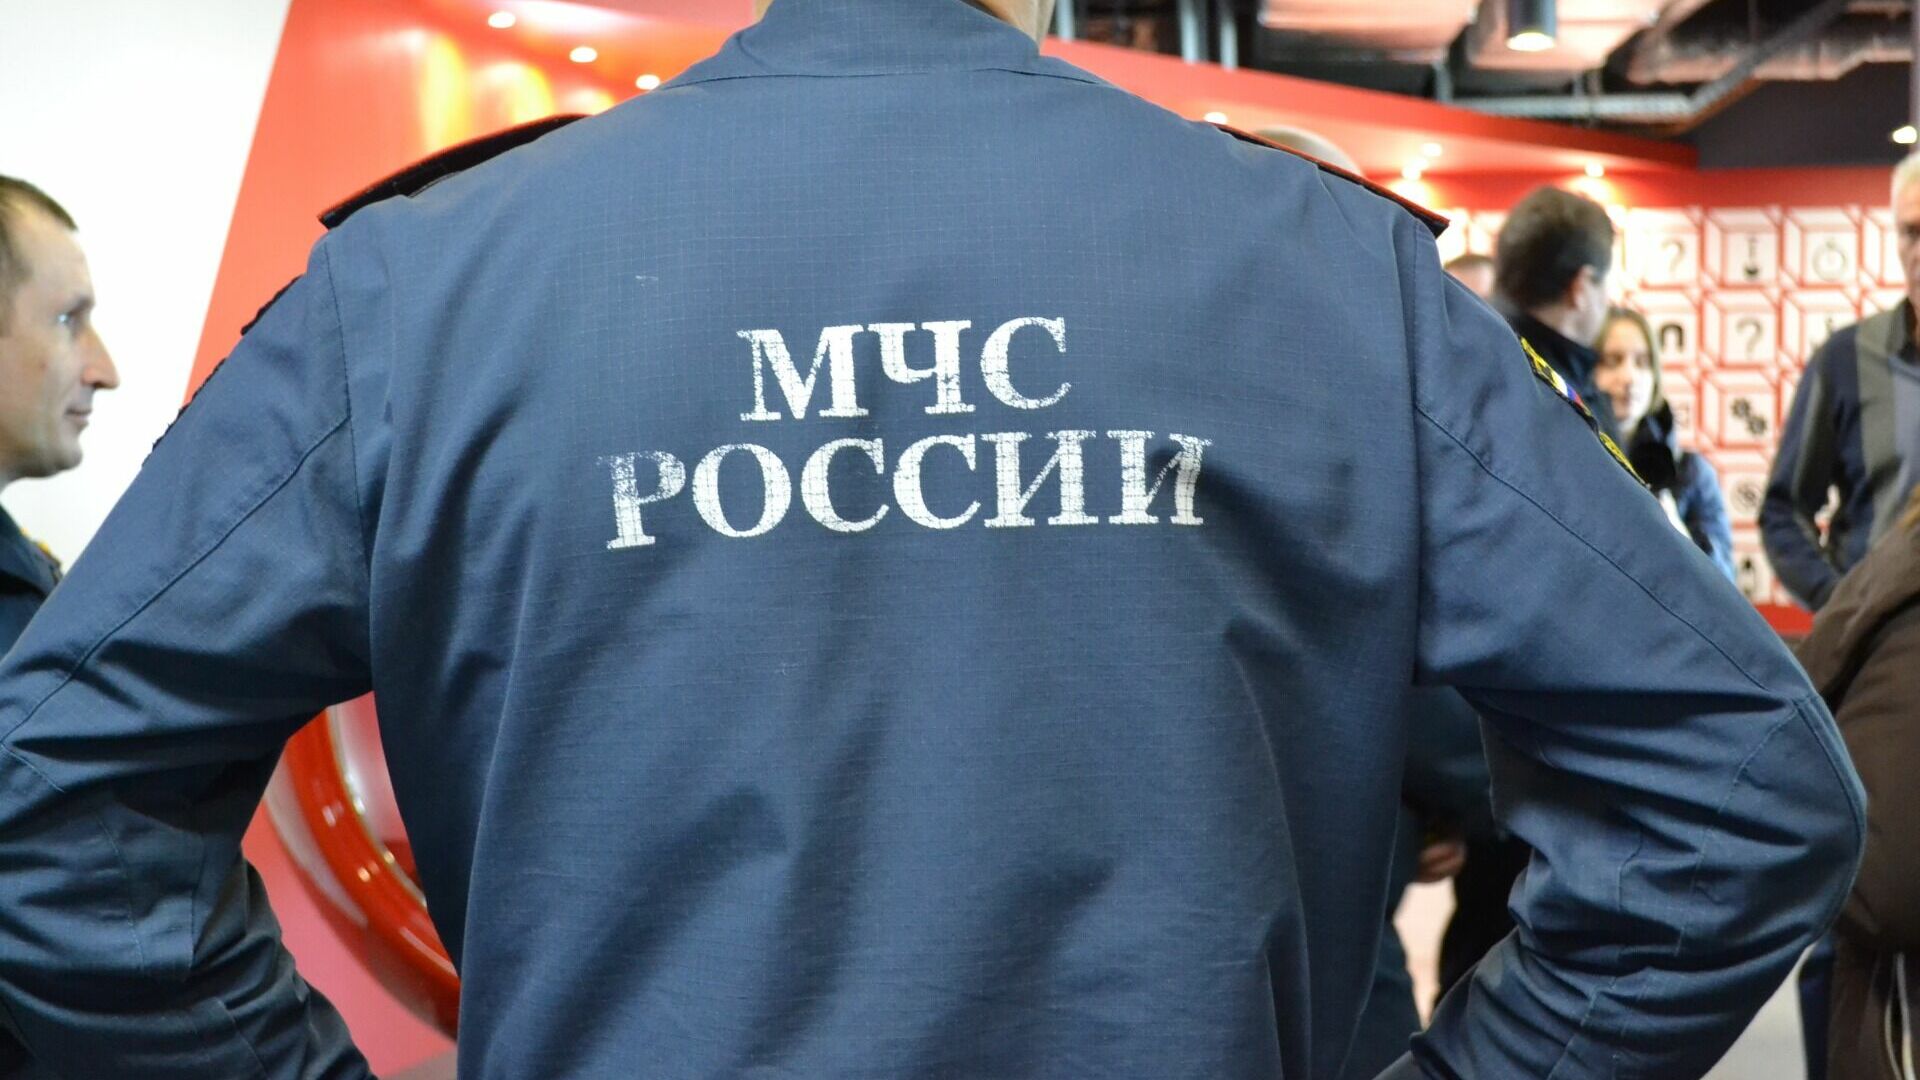 Глава МЧС прибыл в Свердловскую область для оценки помощи пострадавшим от пожаров